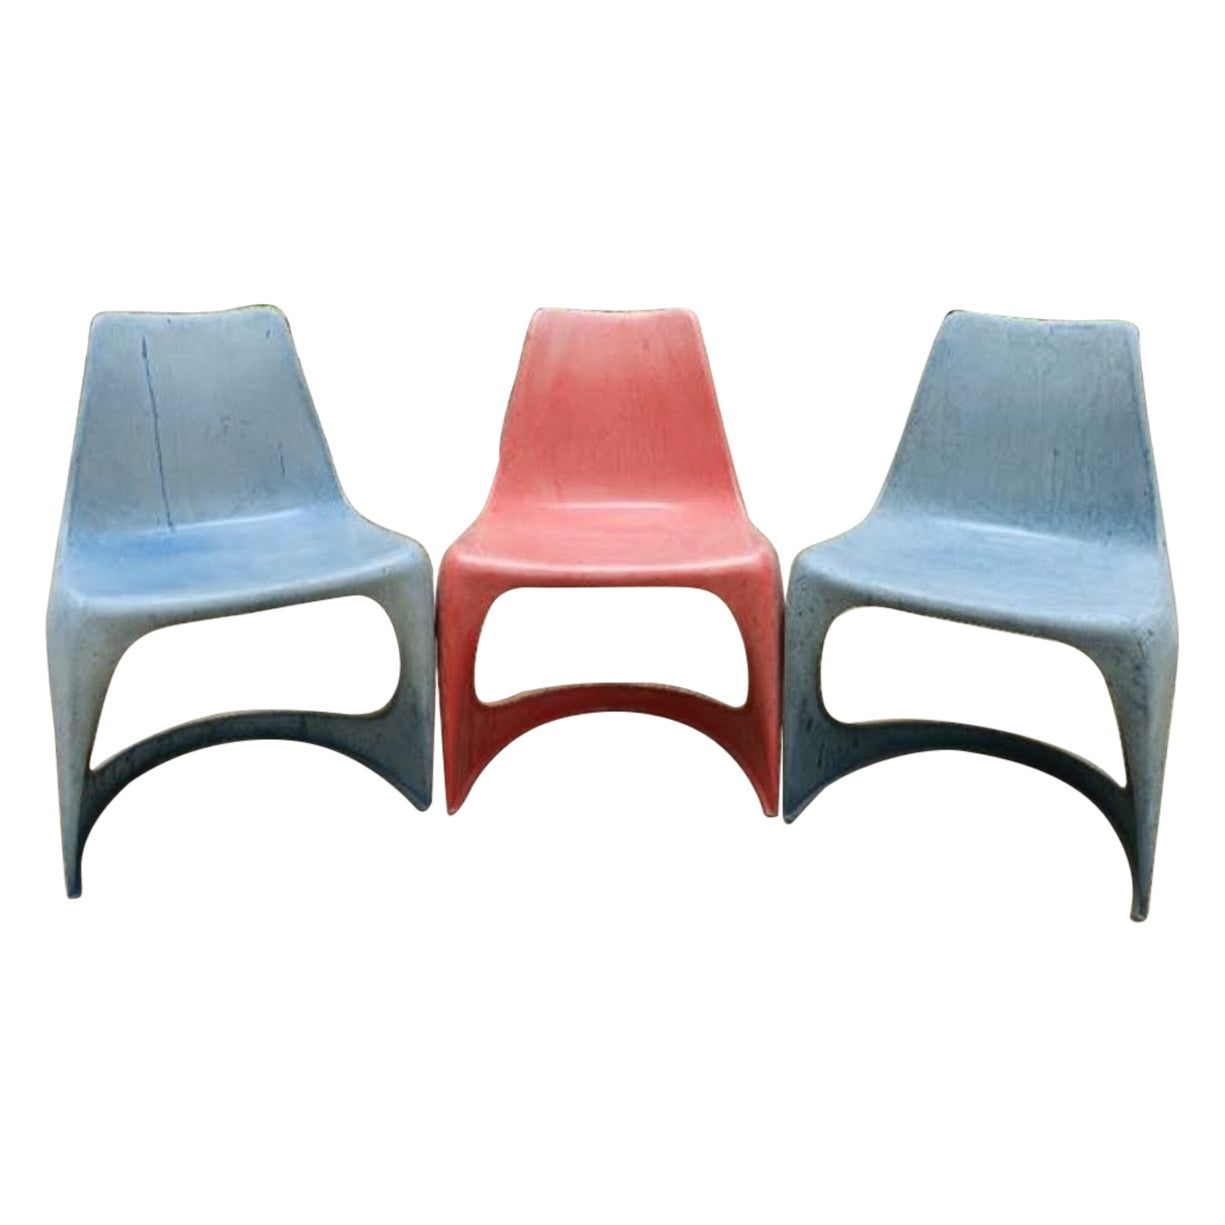 3 Vintage Designer Chairs Steen Ostergaard Manufacturer Cado 60s